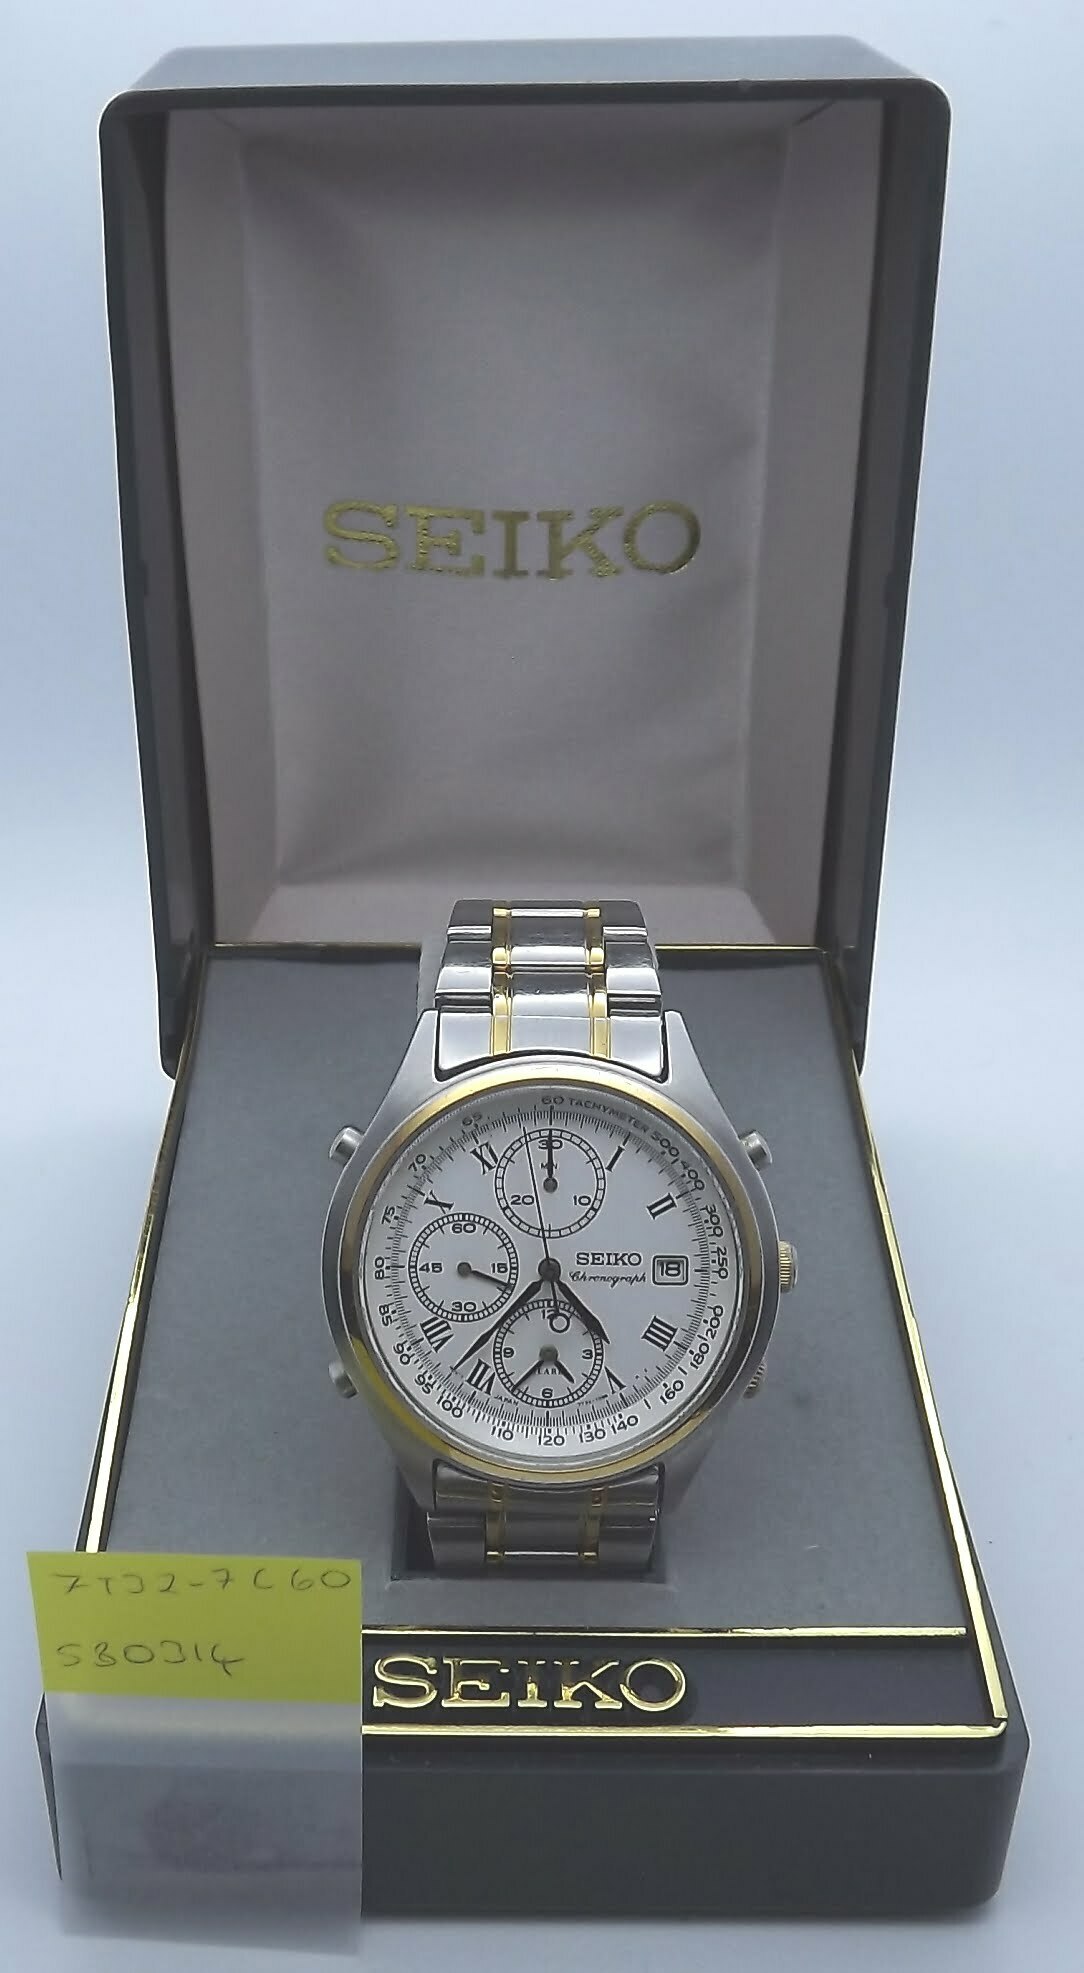 7T32-7C60 – Seiko Works